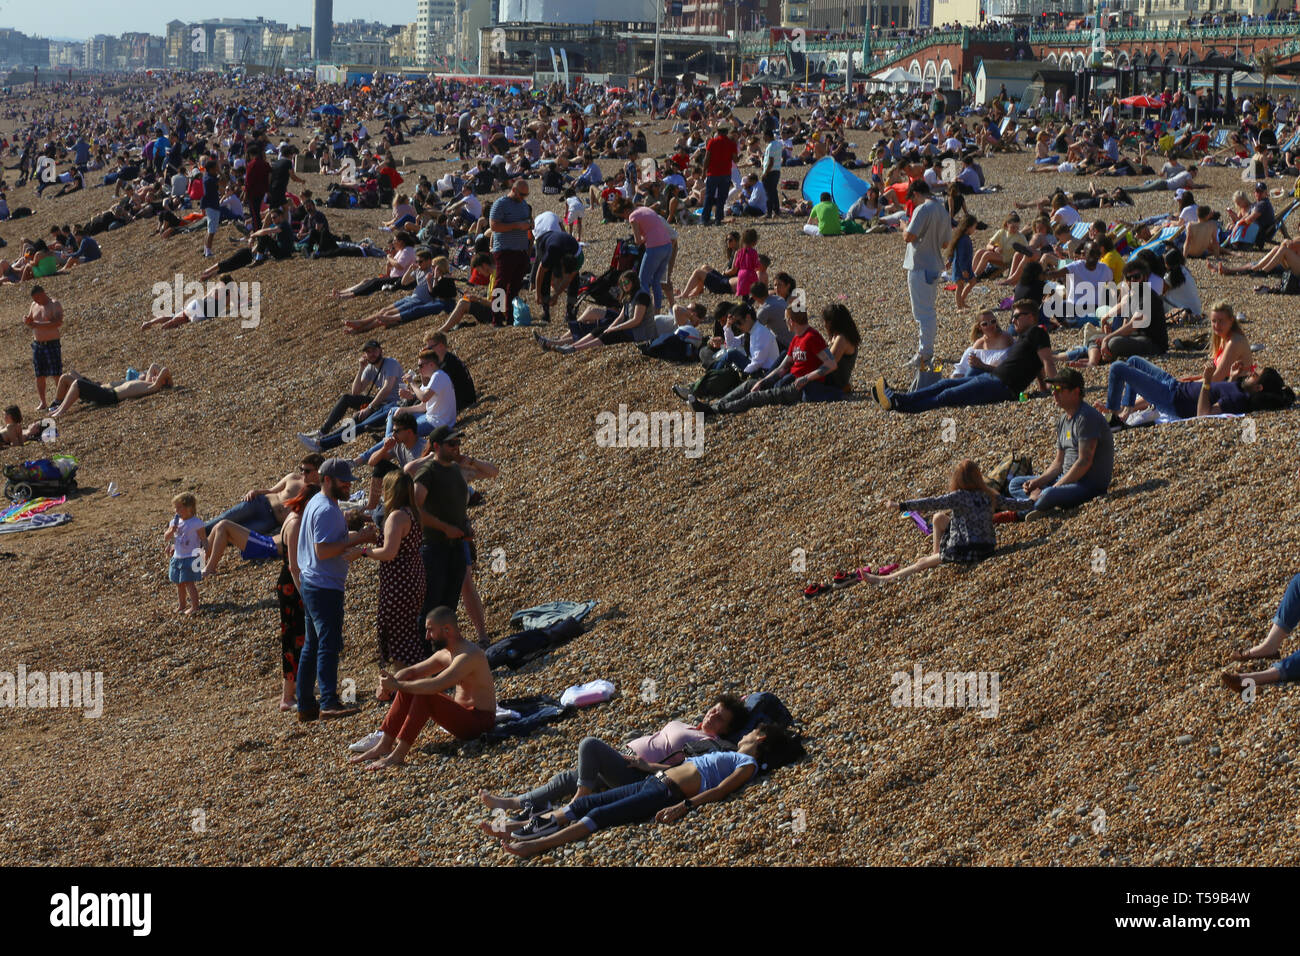 Die Leute am Strand in Brighton an einem sonnigen Tag. Stockfoto